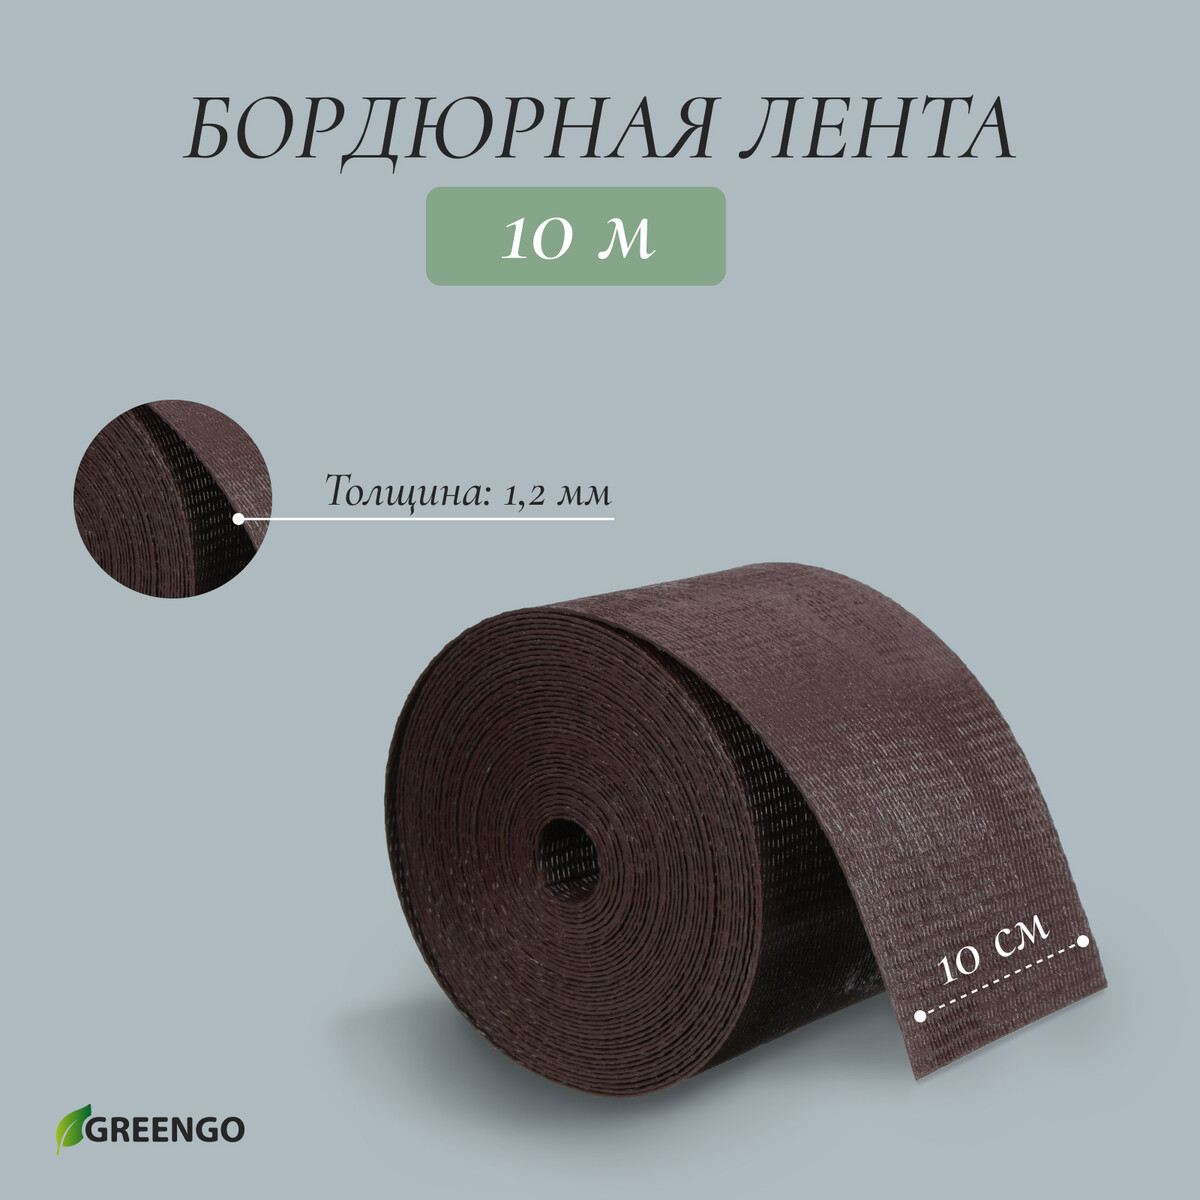 Лента бордюрная, 0.1 × 10 м, толщина 1.2 мм, пластиковая, коричневая, greengo лента бордюрная 0 15 × 9 м толщина 0 6 мм пластиковая гофра зеленая greengo